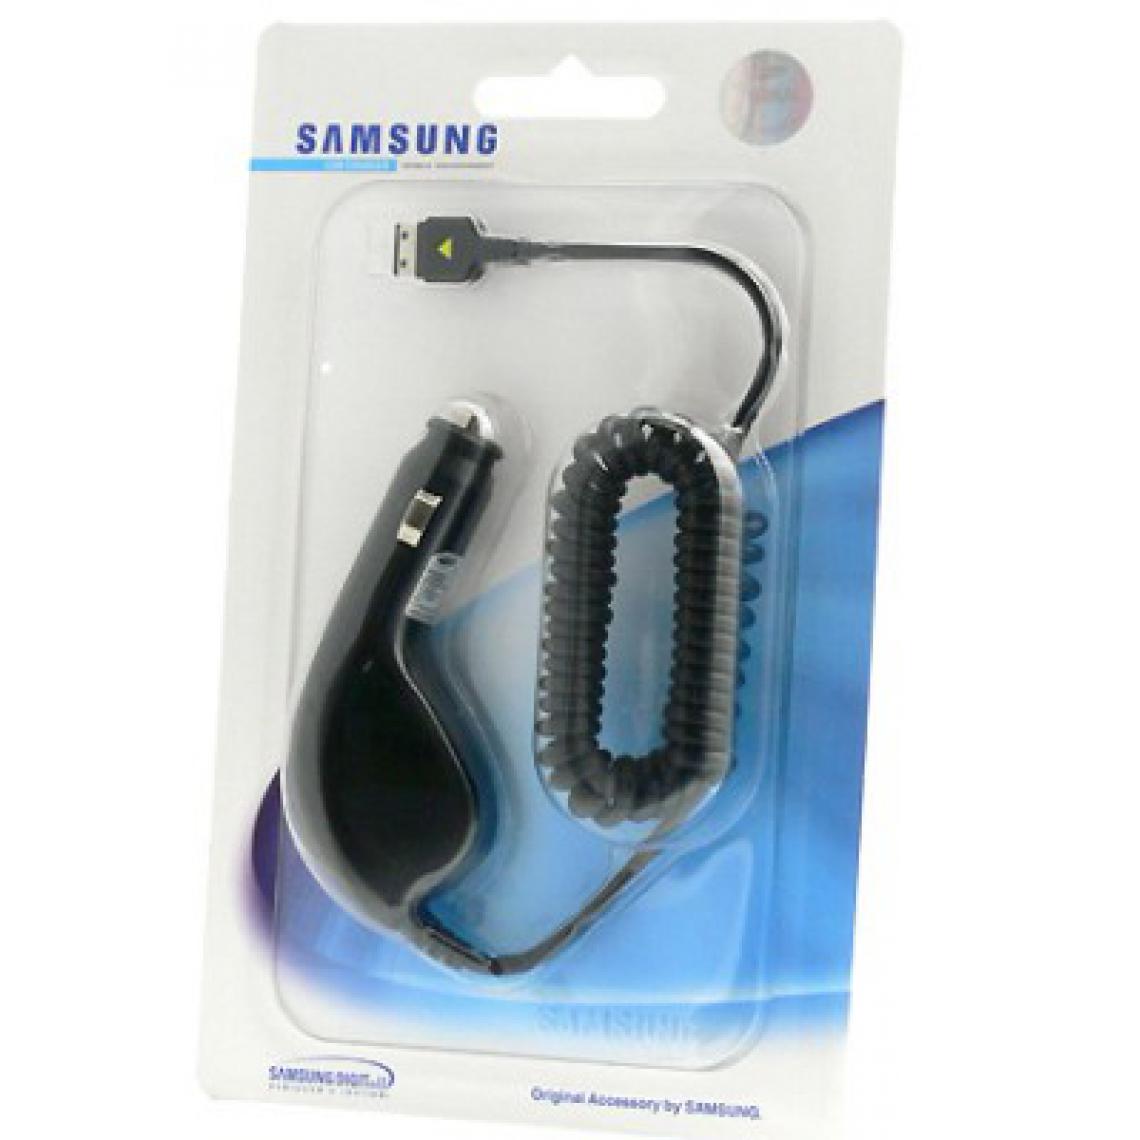 Samsung - CAD300SBE Chargeur Voiture Original Samsung G600/G800/L760 - Support téléphone pour voiture